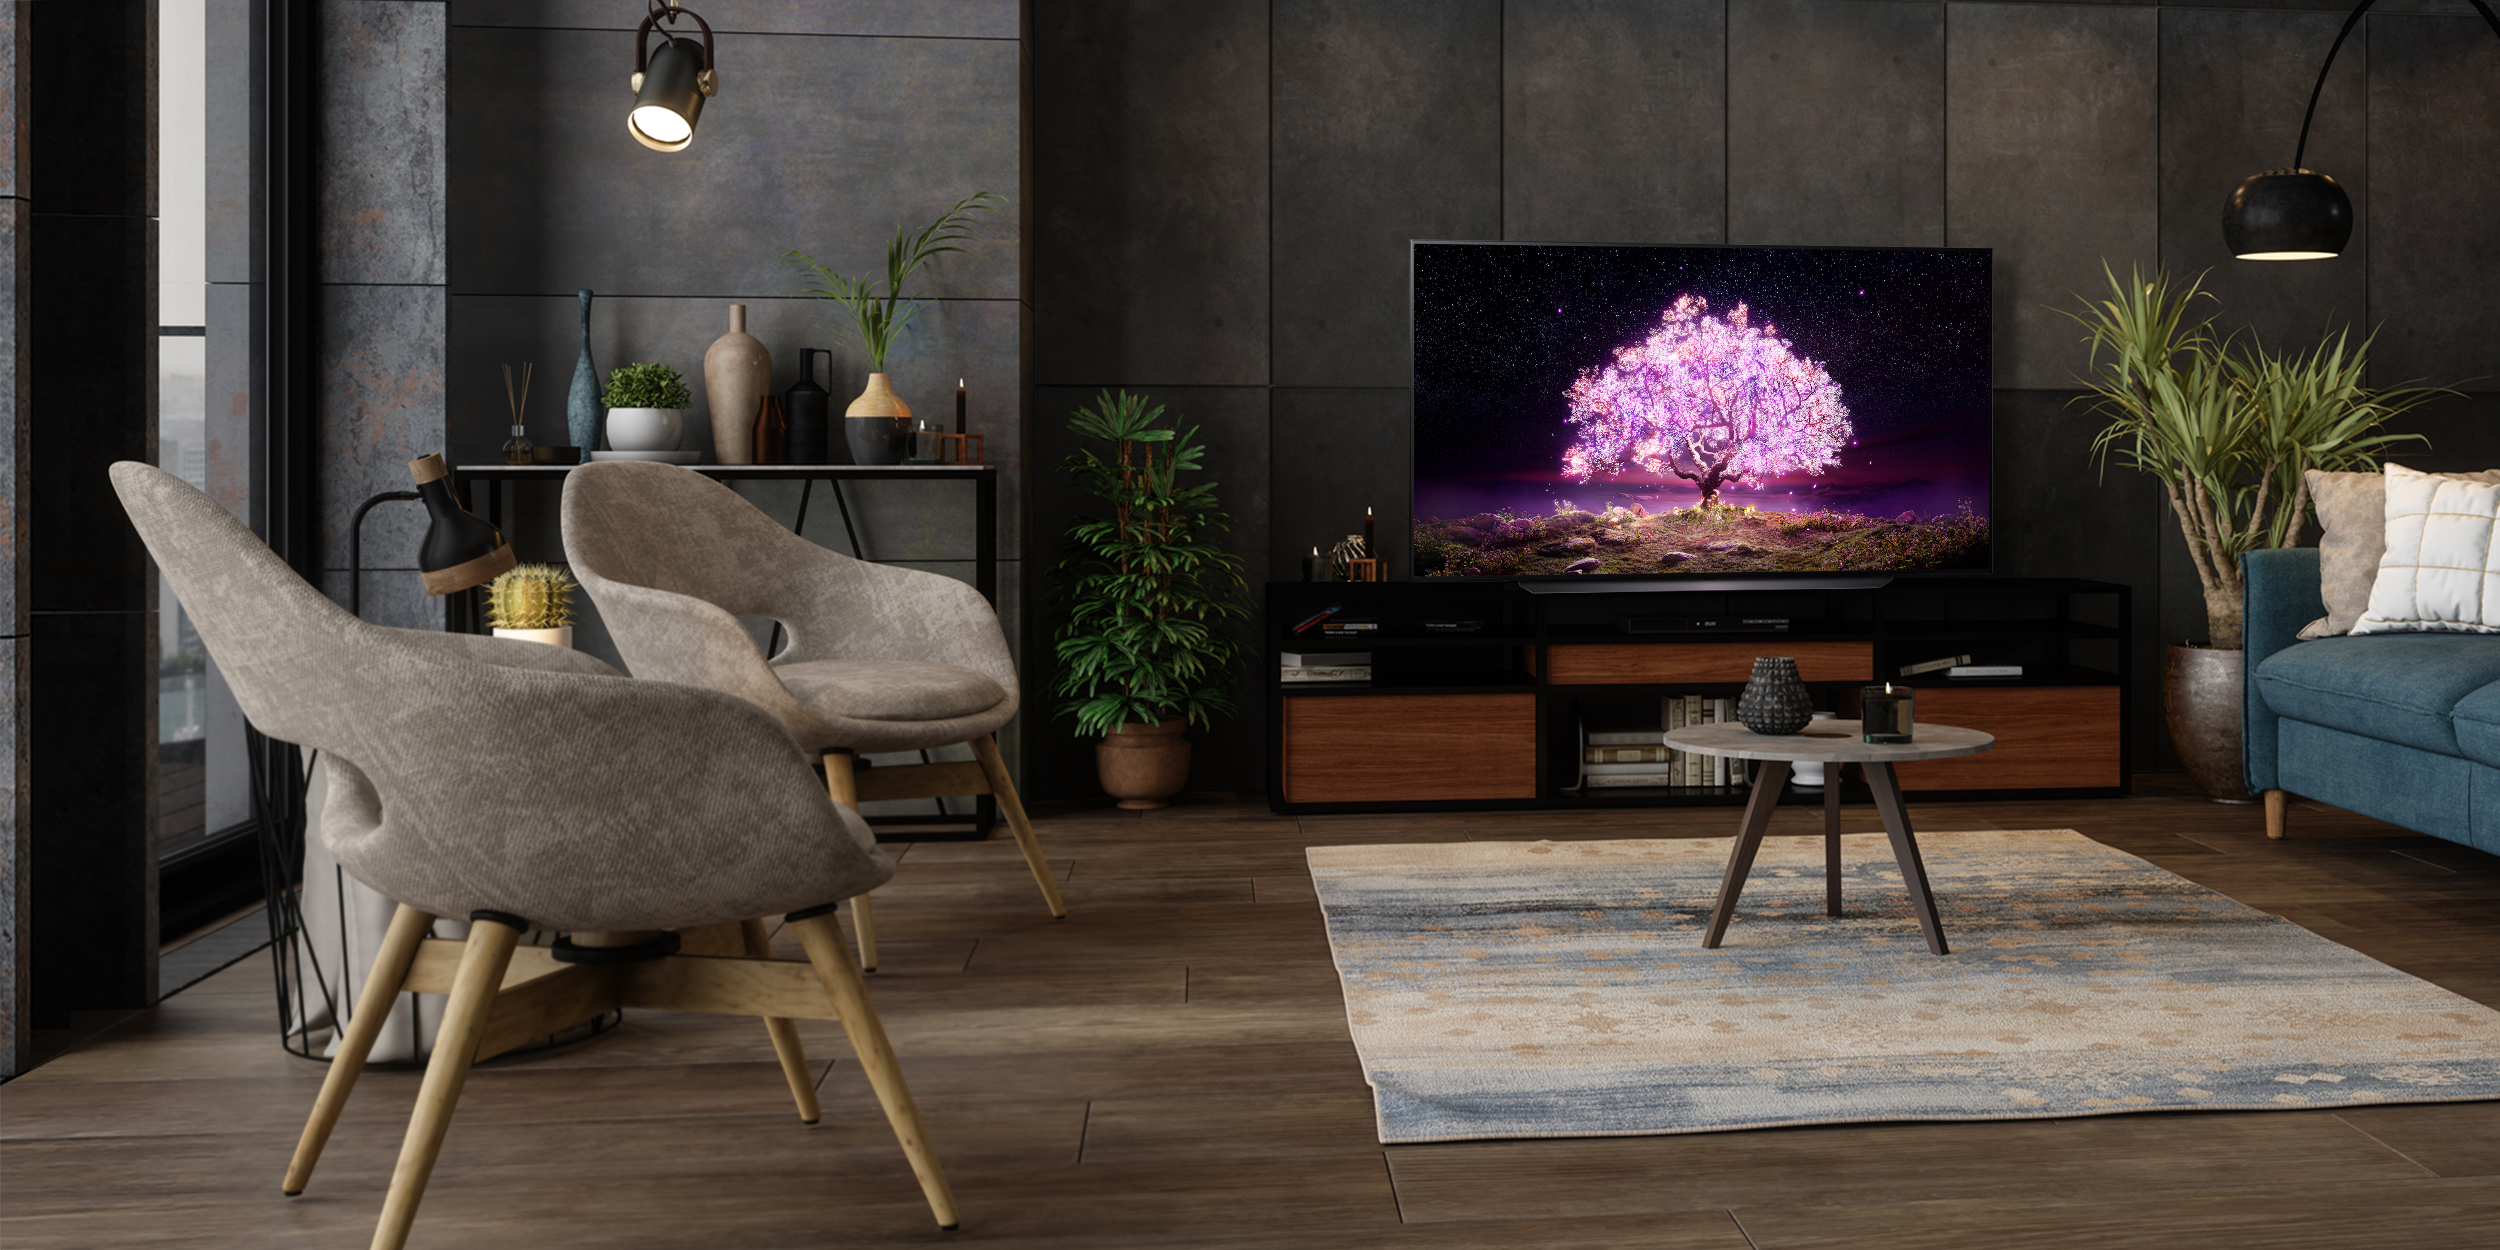 LG OLED TV C1 Ambient